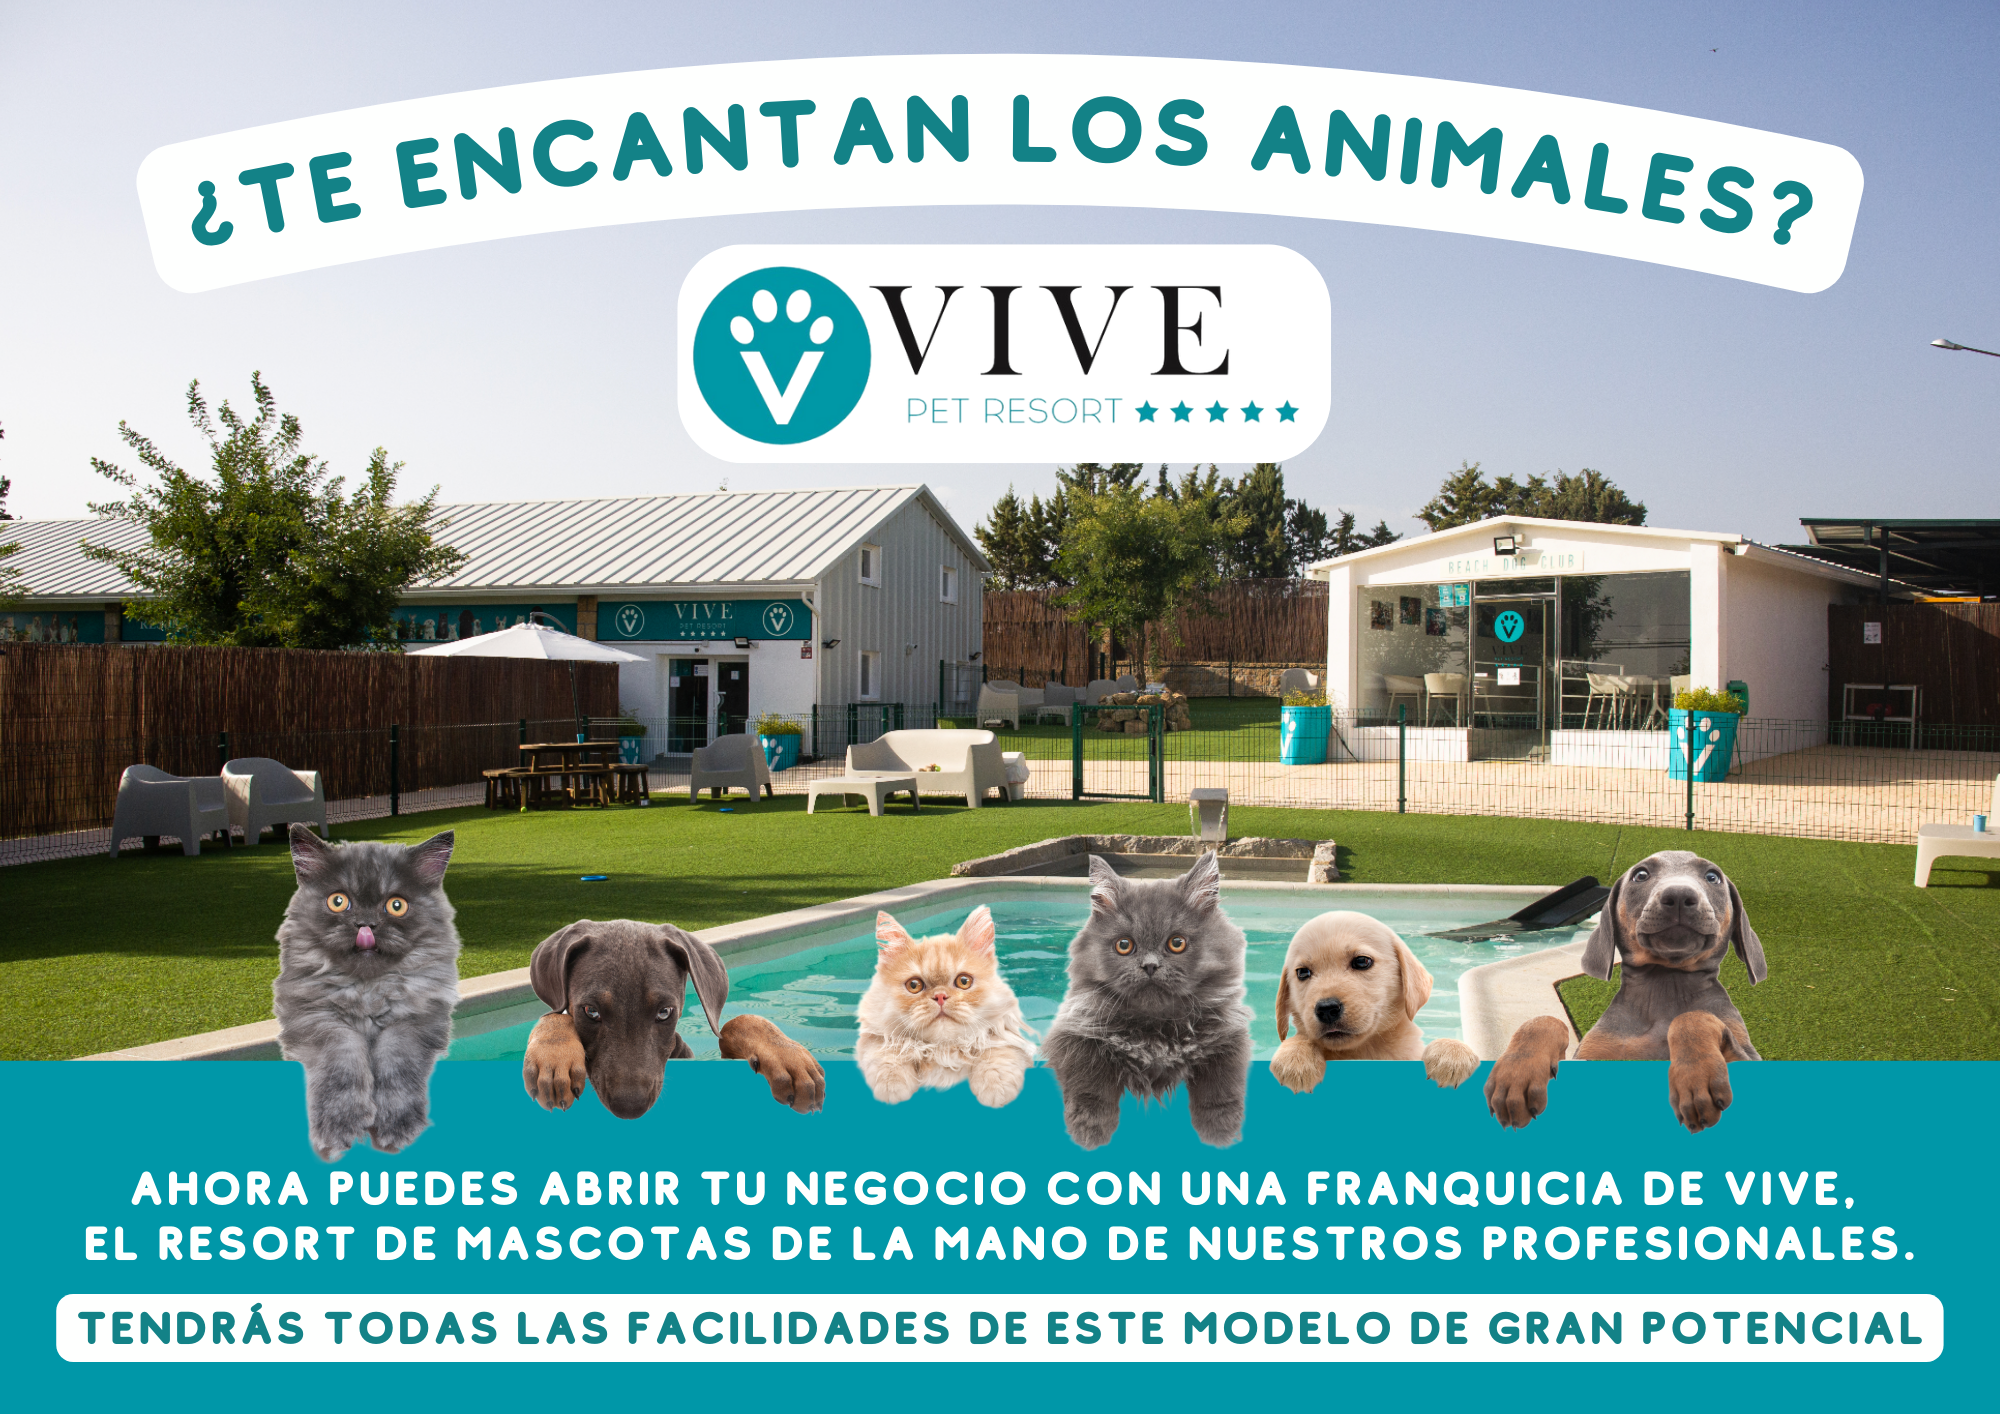 Invierte en Franquicia con animales: Vive Pet Resort - hotel canino - inversion - franquicia